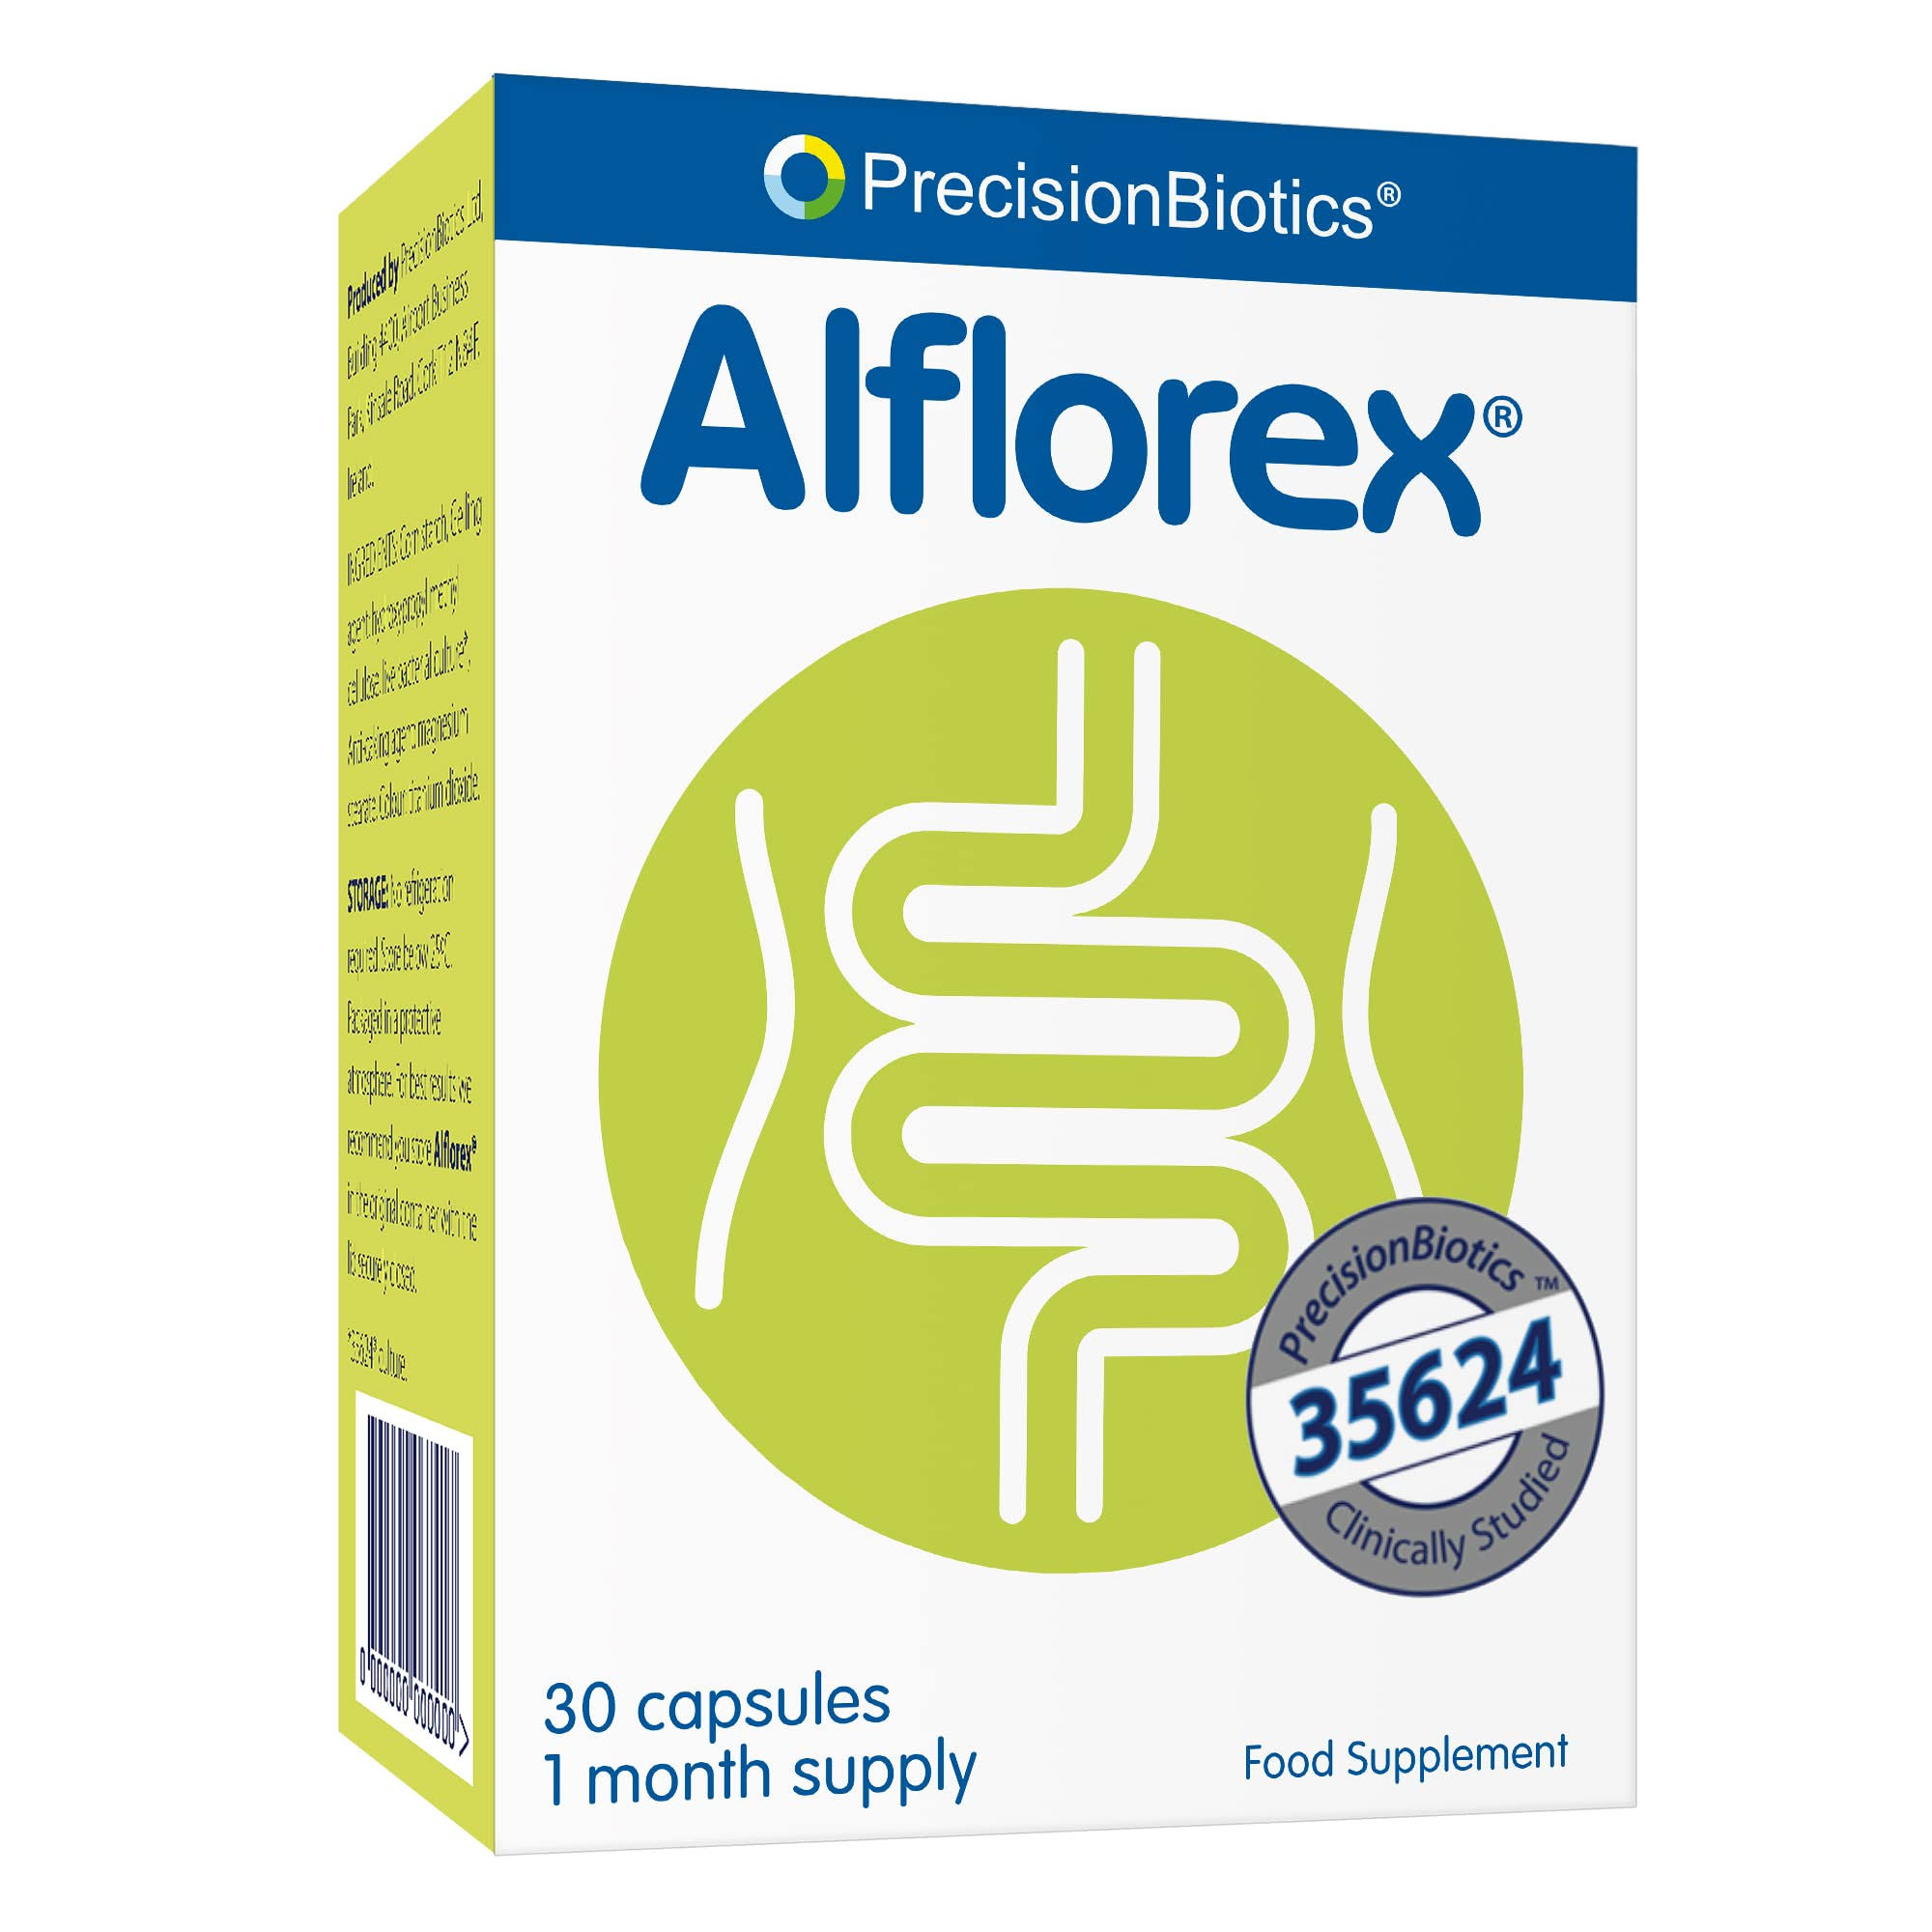 Alflorex Precision Biotics Food Supplement - 30 Capsules